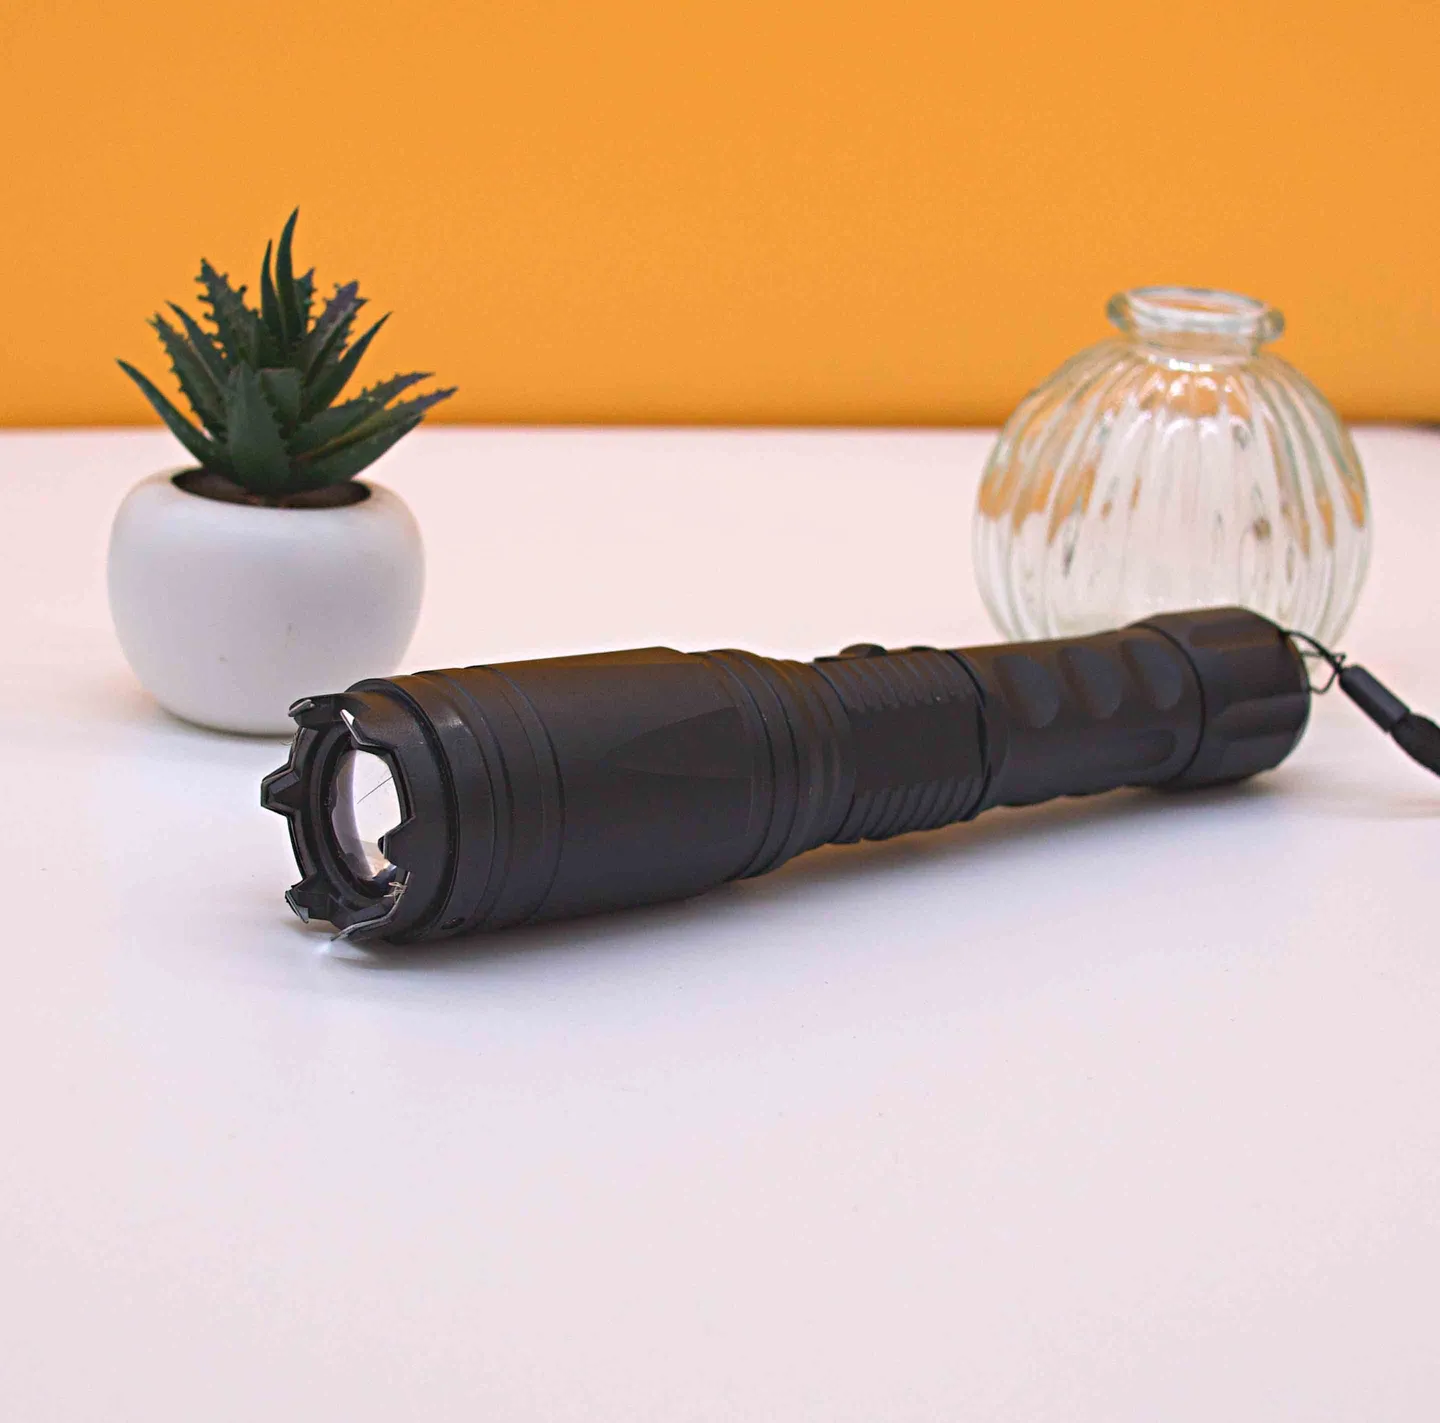 Elektroschocker & Taser - Zoombare Taschenlampe mit Elektroschocker und 8.000.000 Volt Glasbrecher